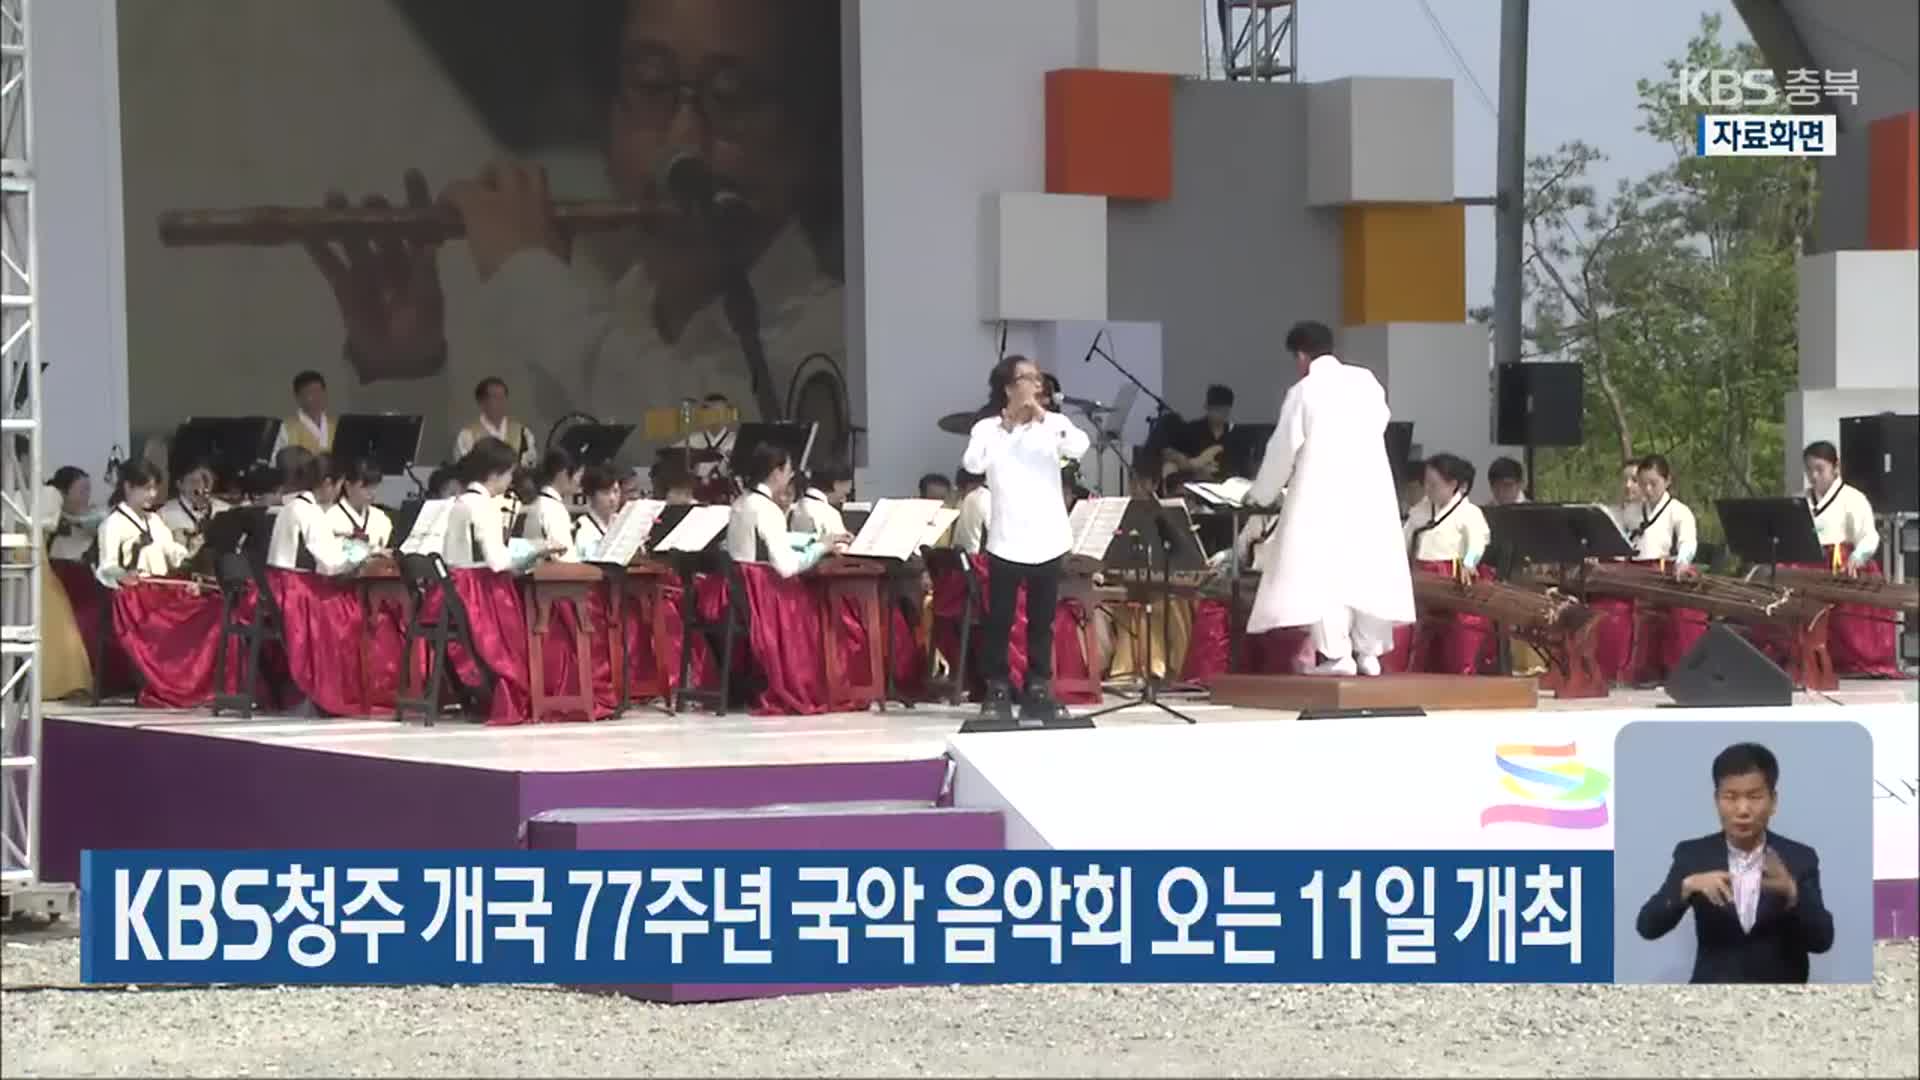 KBS청주 개국 77주년 국악 음악회 오는 11일 개최